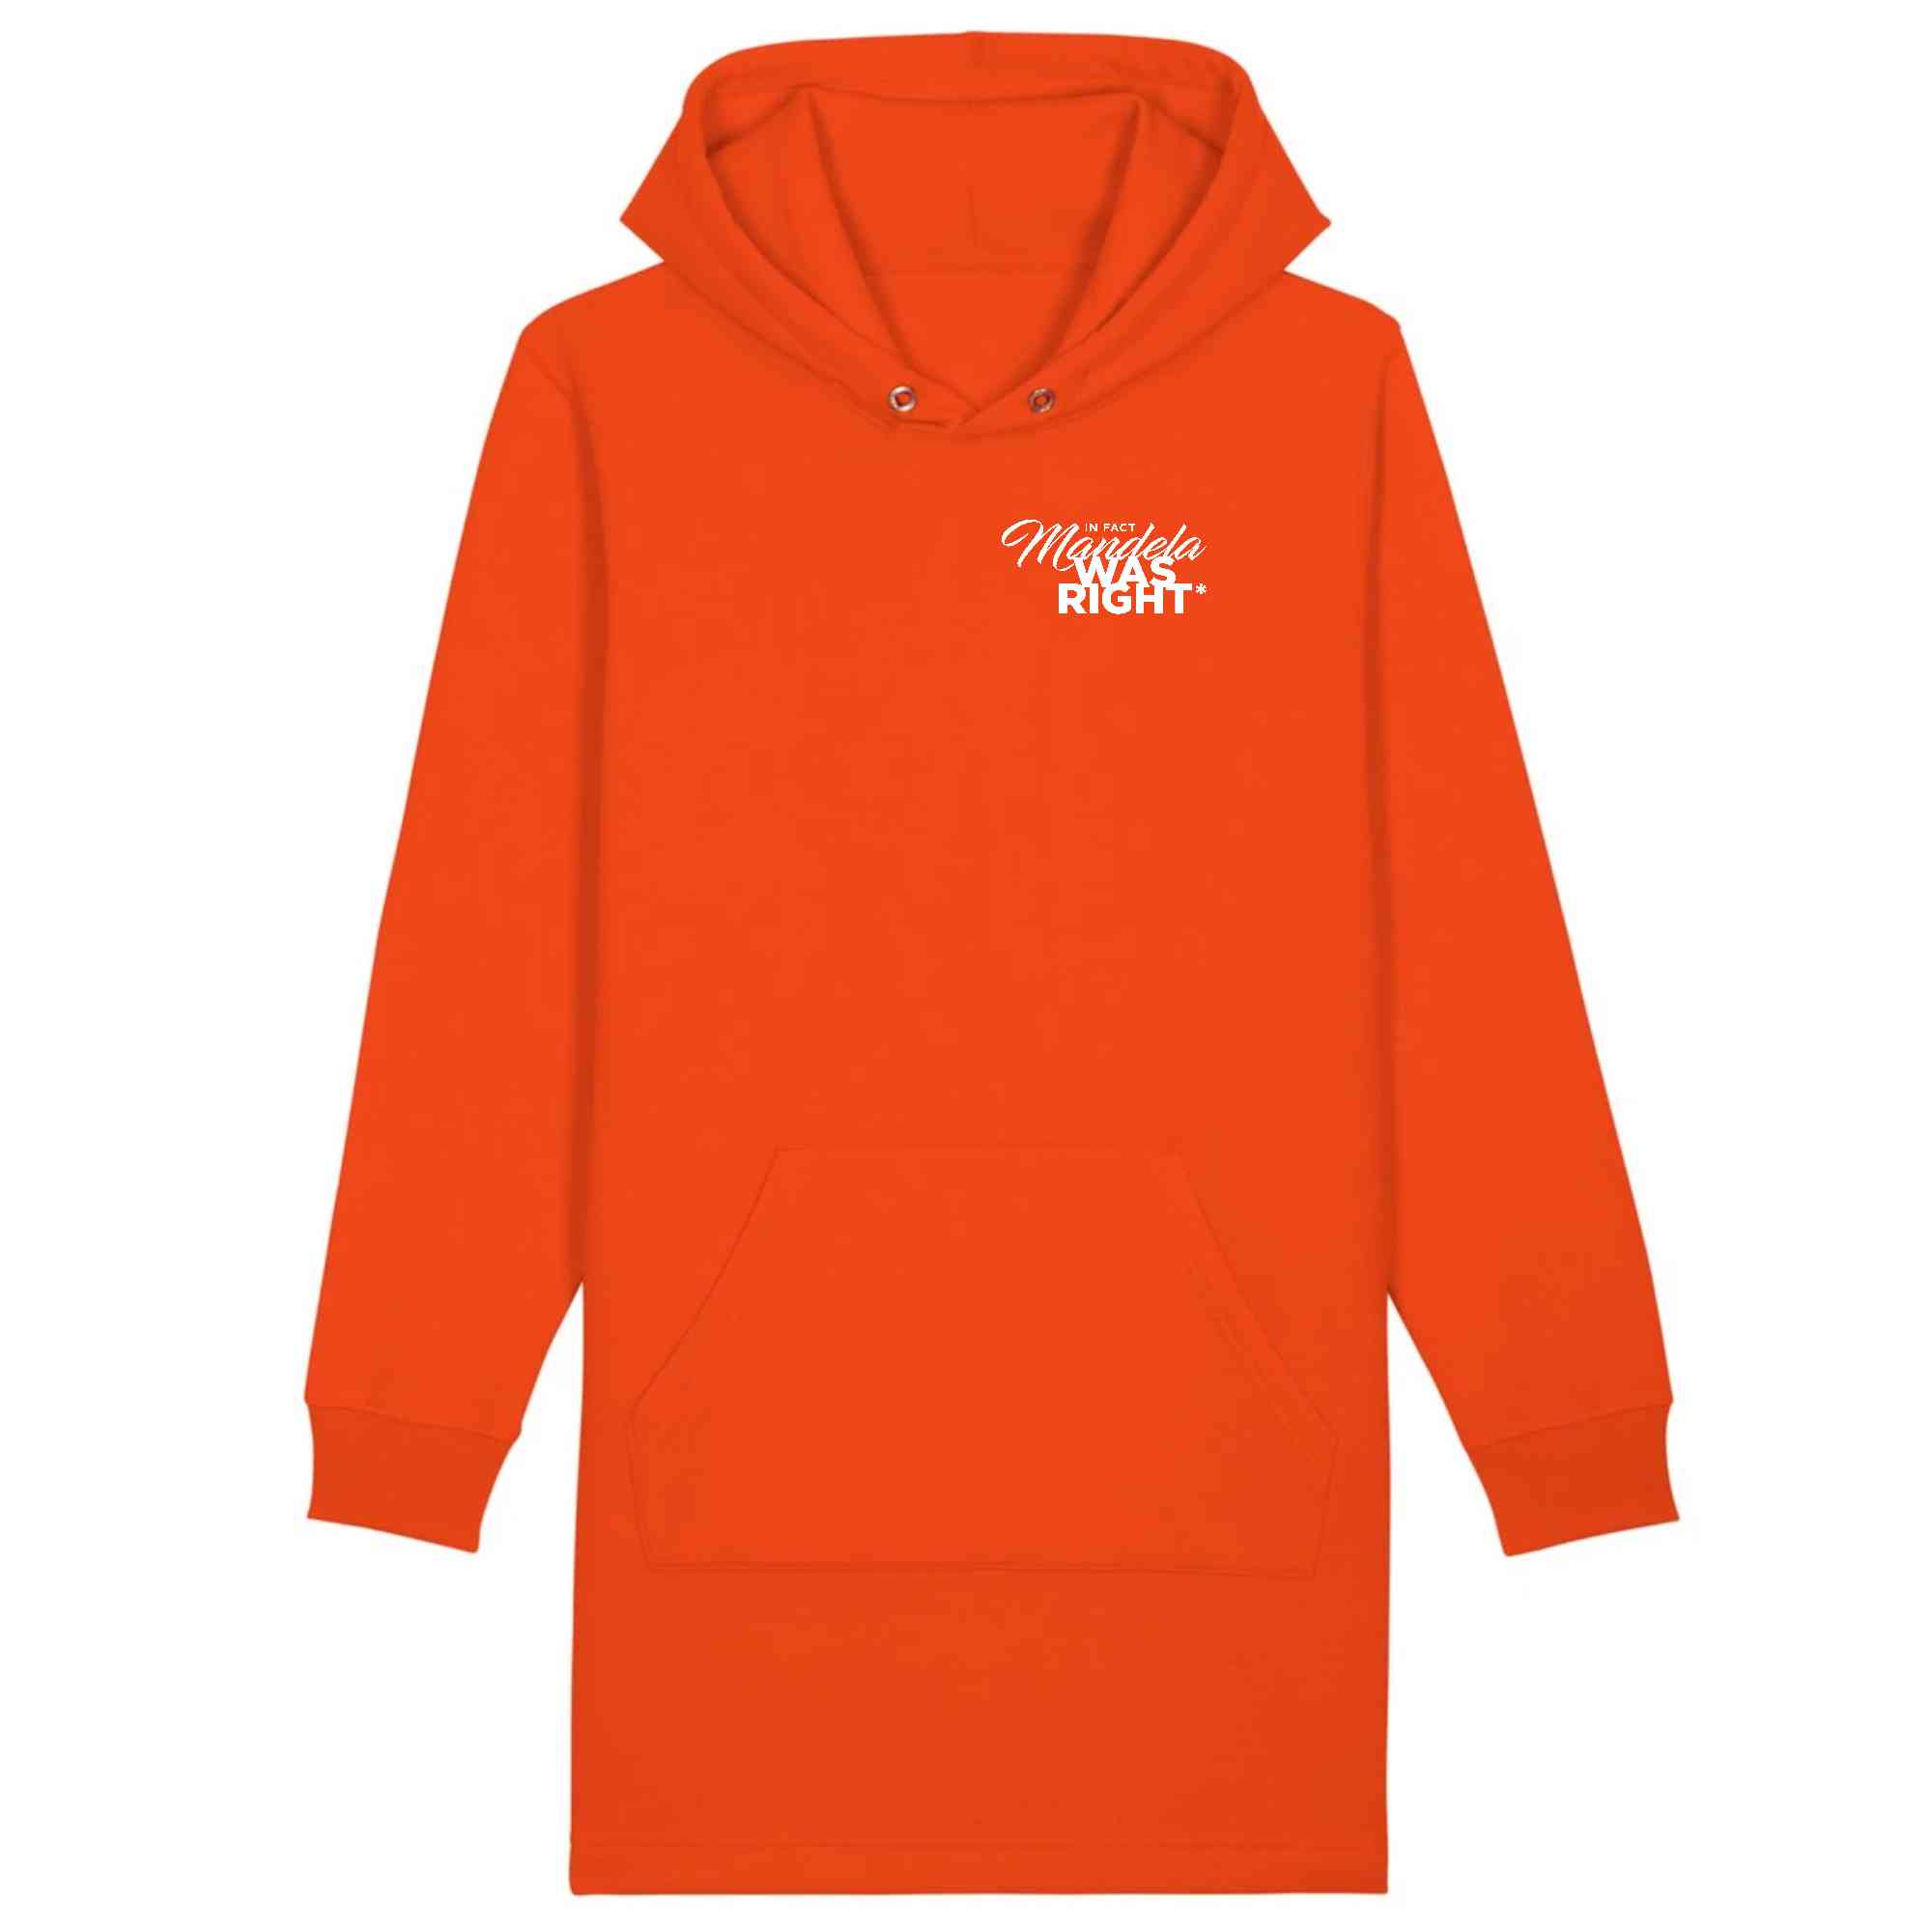 Robe sweat à capuche orange en coton bio - Collection sweatshirt femme inspirant